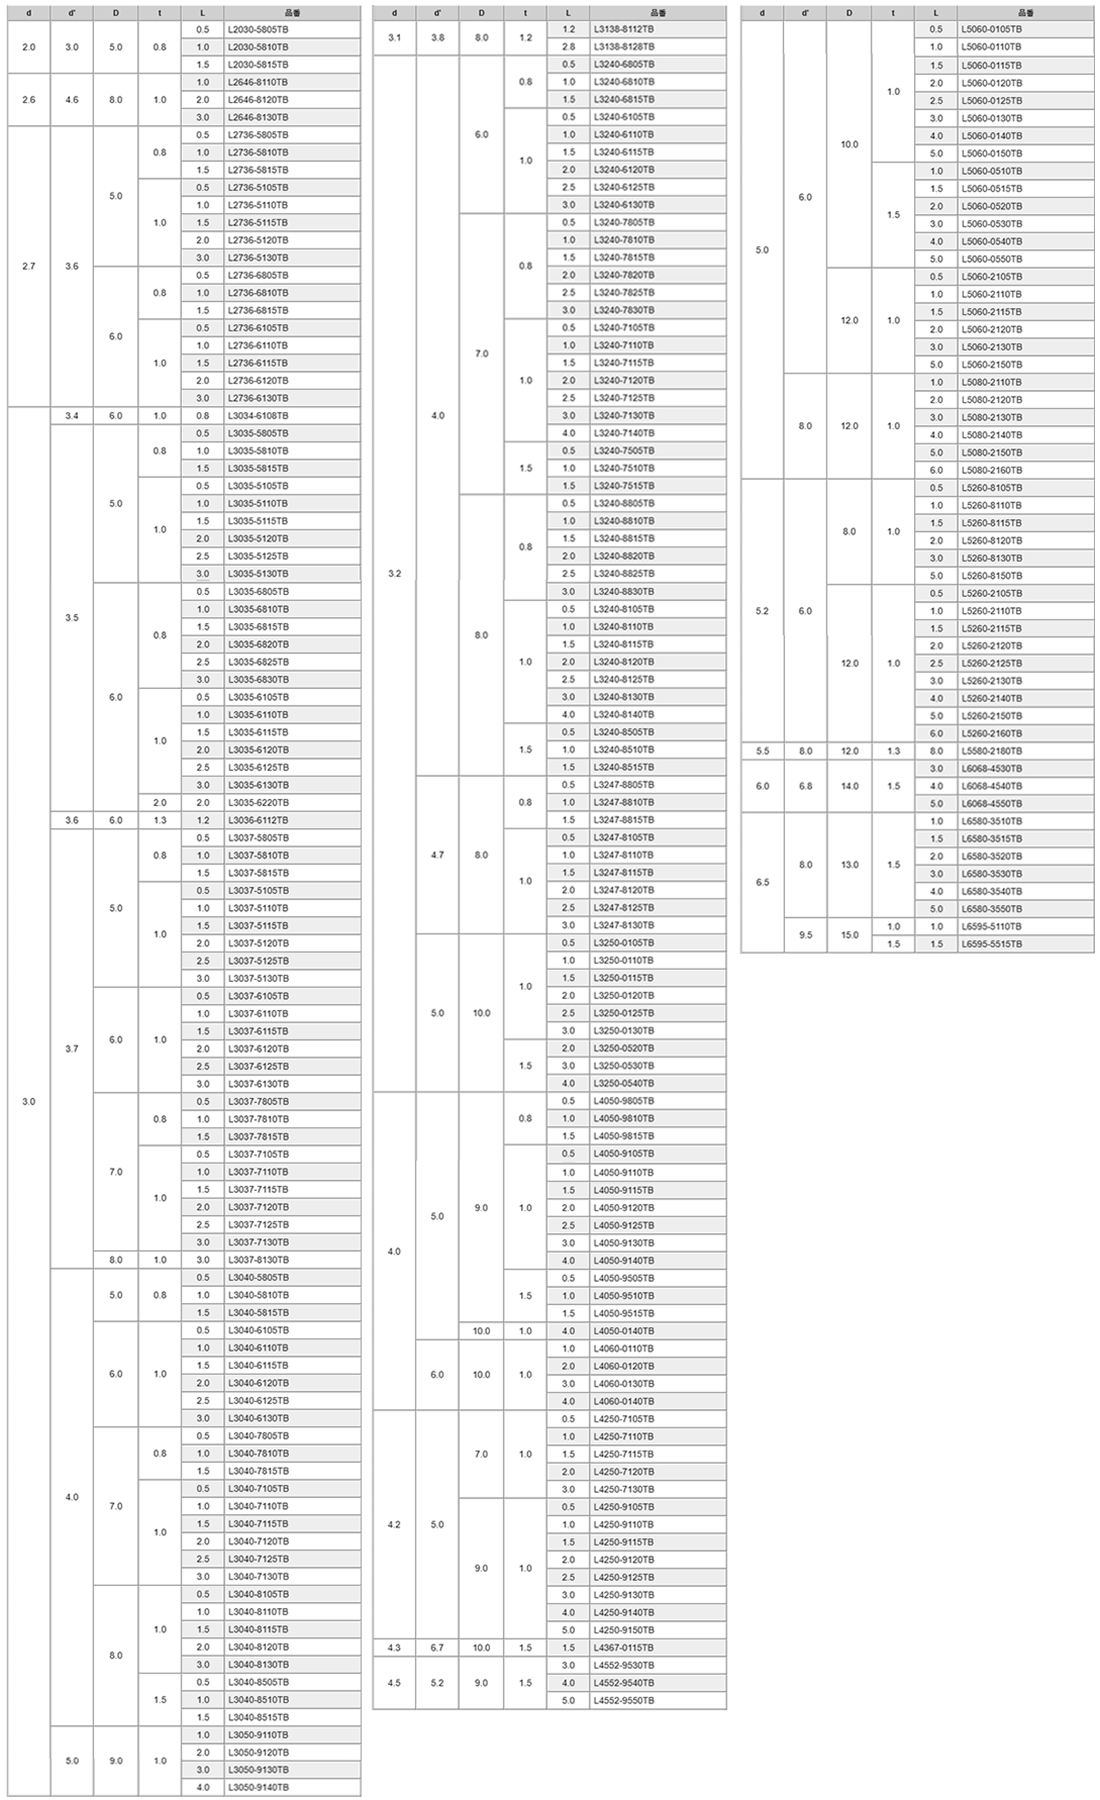 アルミ(CB156) ブッシュ (切削品) L0000-0000TB (黒色アルマイト)の寸法表